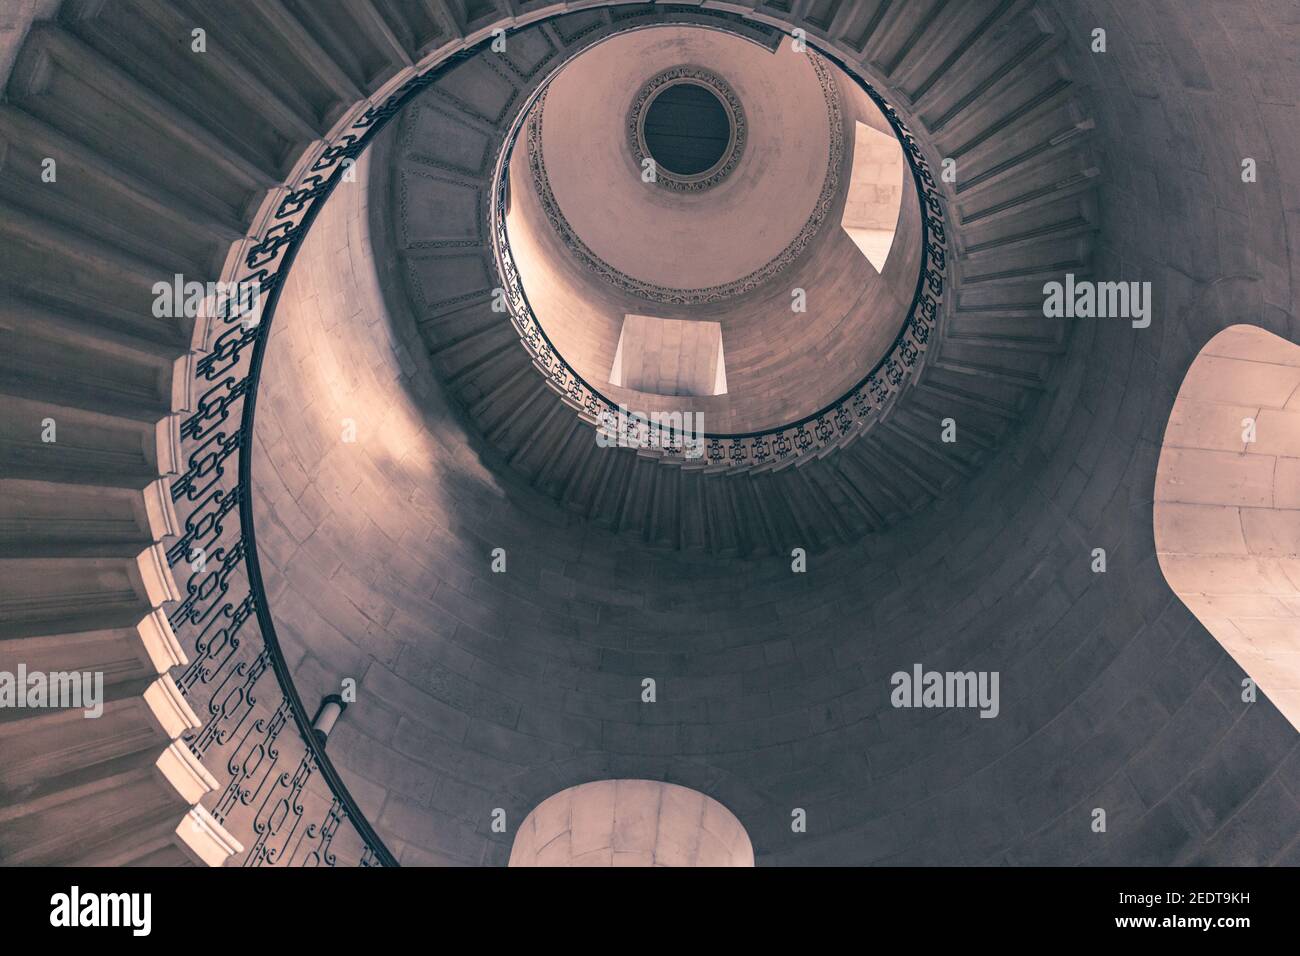 La escalera del decano, la Catedral de San Pablo, vista arriba escaleras de caracol hechas famoso como el hueco de la escalera de la Divinación en las películas de Harry Potter, Londres, Reino Unido Foto de stock